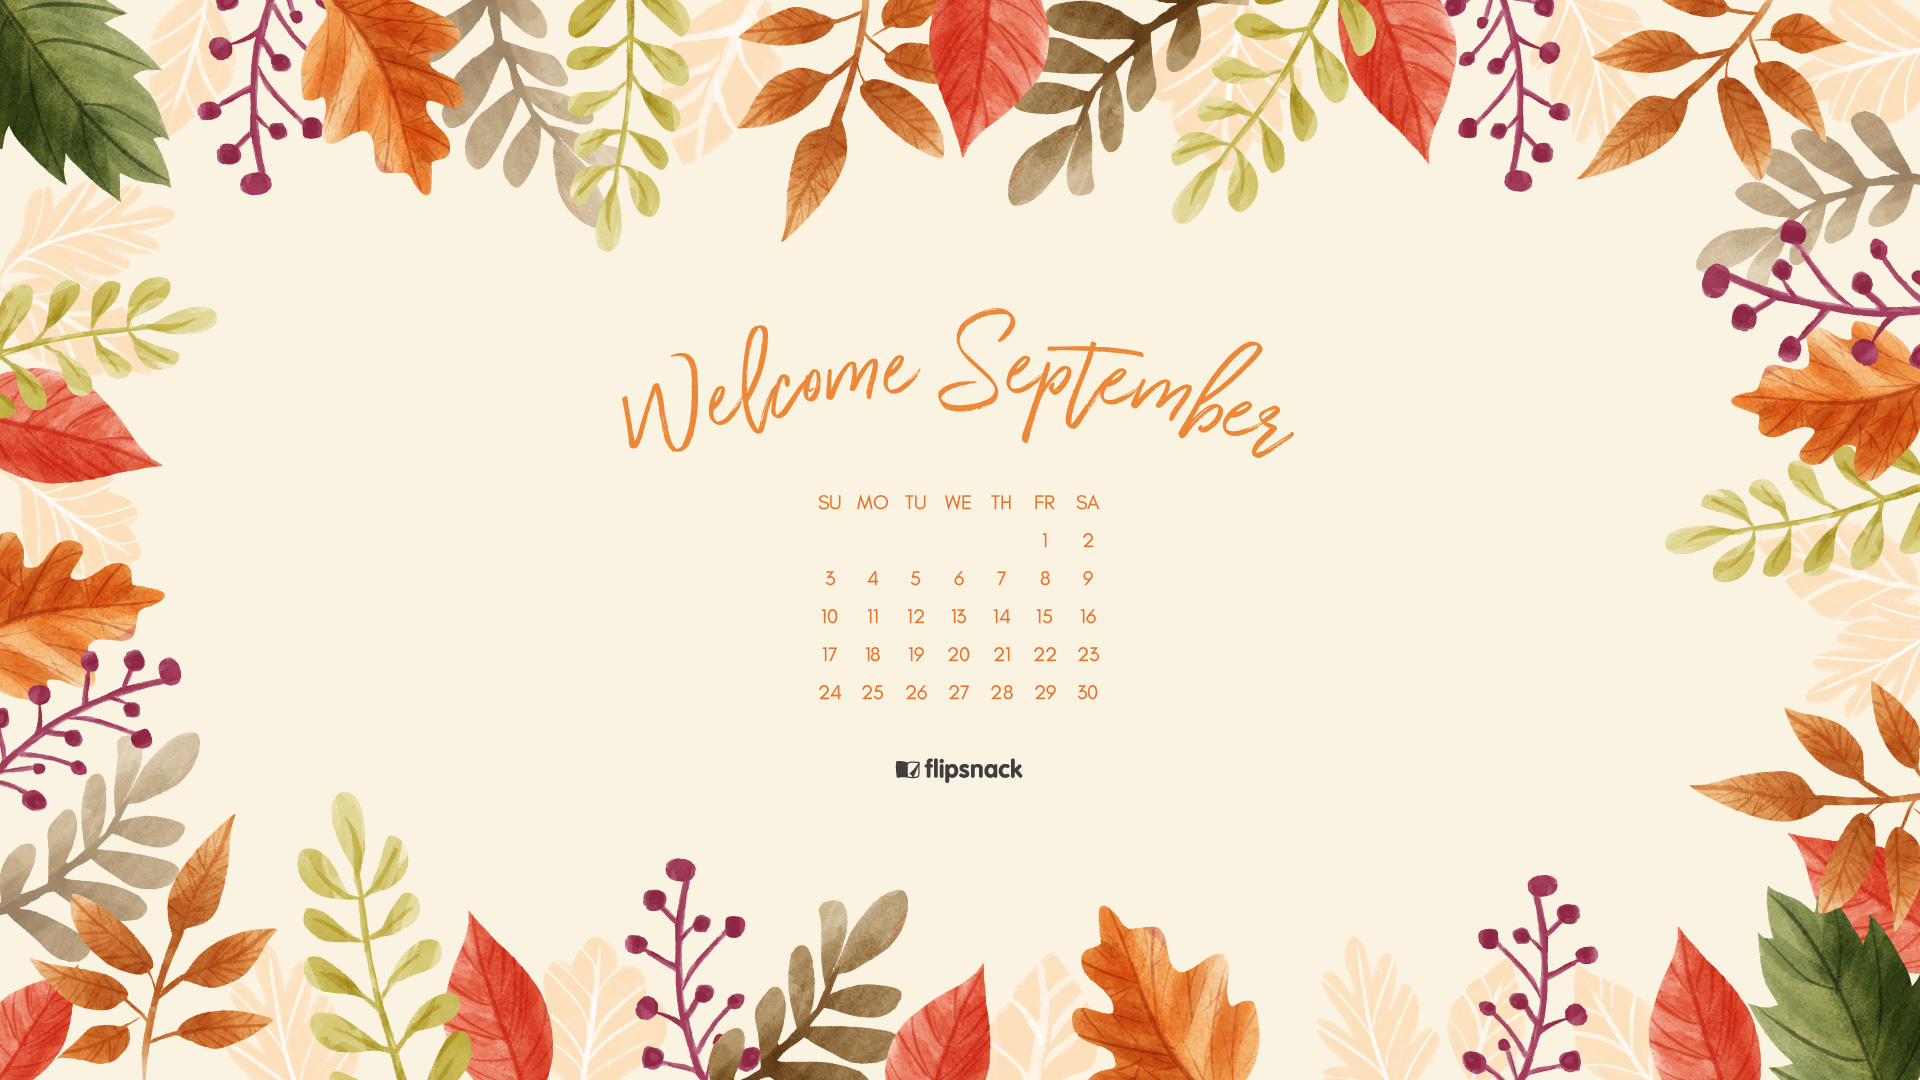 Tháng chín đến rồi! Hãy chiêm ngưỡng hình ảnh đầy sắc màu của mùa thu, tìm hiểu về các ngày lễ và sự kiện quan trọng trong tháng này để có kế hoạch thú vị và bổ ích nhất!